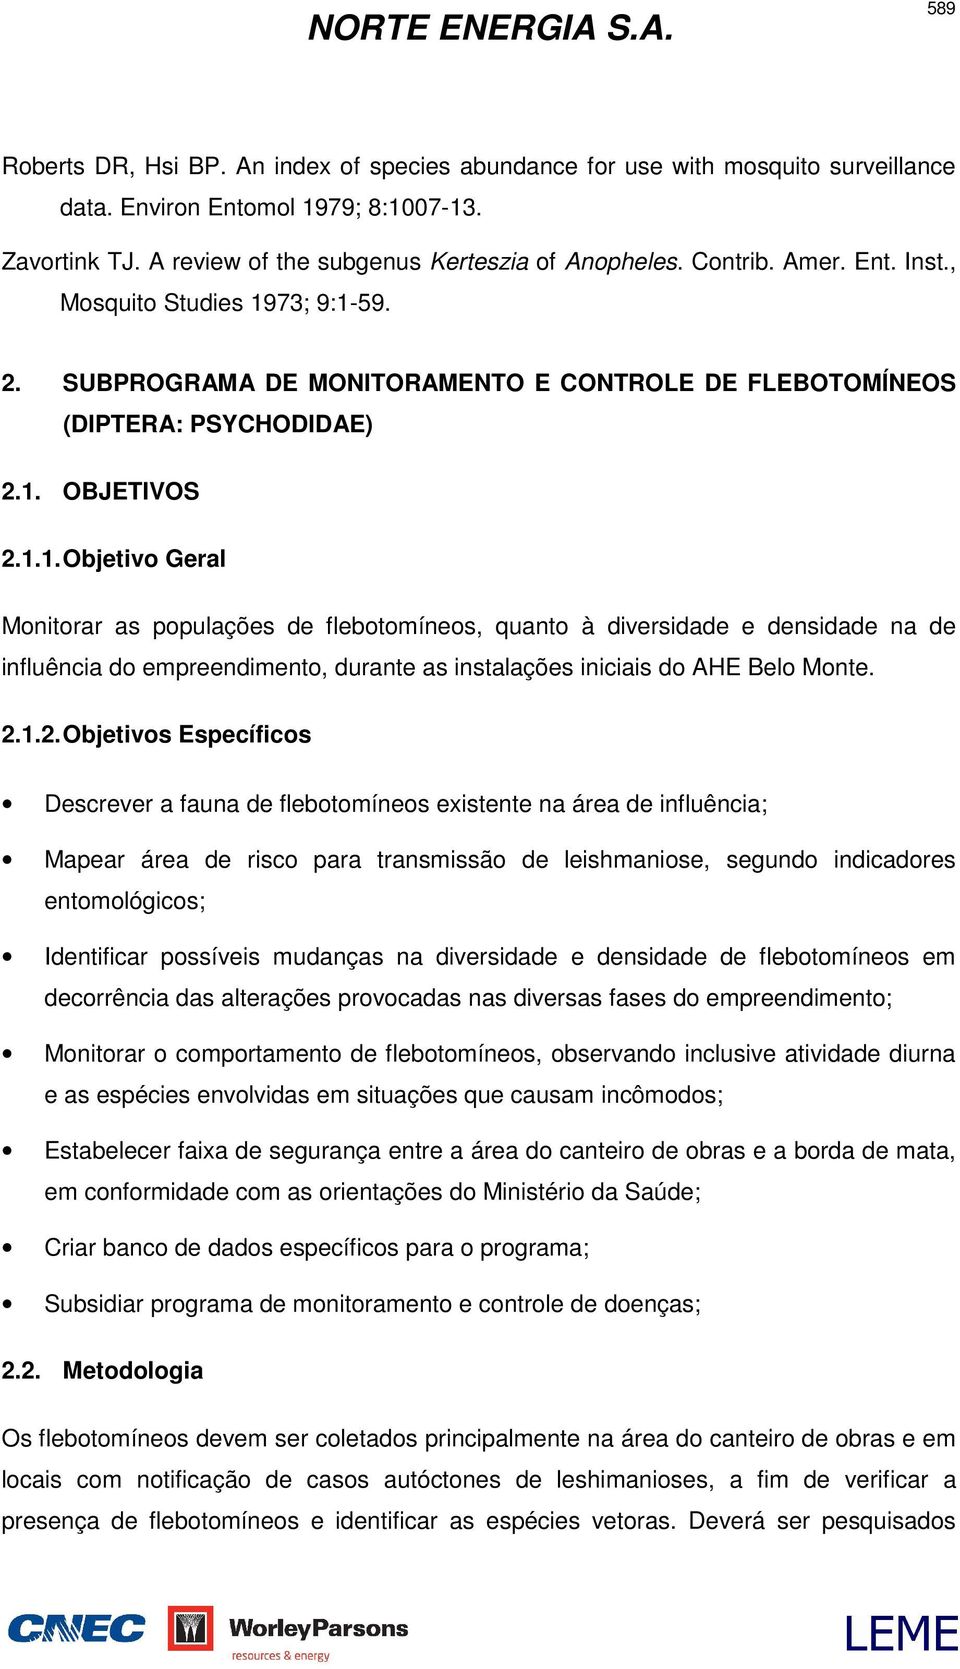 73; 9:1-59. 2. SUBPROGRAMA DE MONITORAMENTO E CONTROLE DE FLEBOTOMÍNEOS (DIPTERA: PSYCHODIDAE) 2.1. OBJETIVOS 2.1.1. Objetivo Geral Monitorar as populações de flebotomíneos, quanto à diversidade e densidade na de influência do empreendimento, durante as instalações iniciais do AHE Belo Monte.